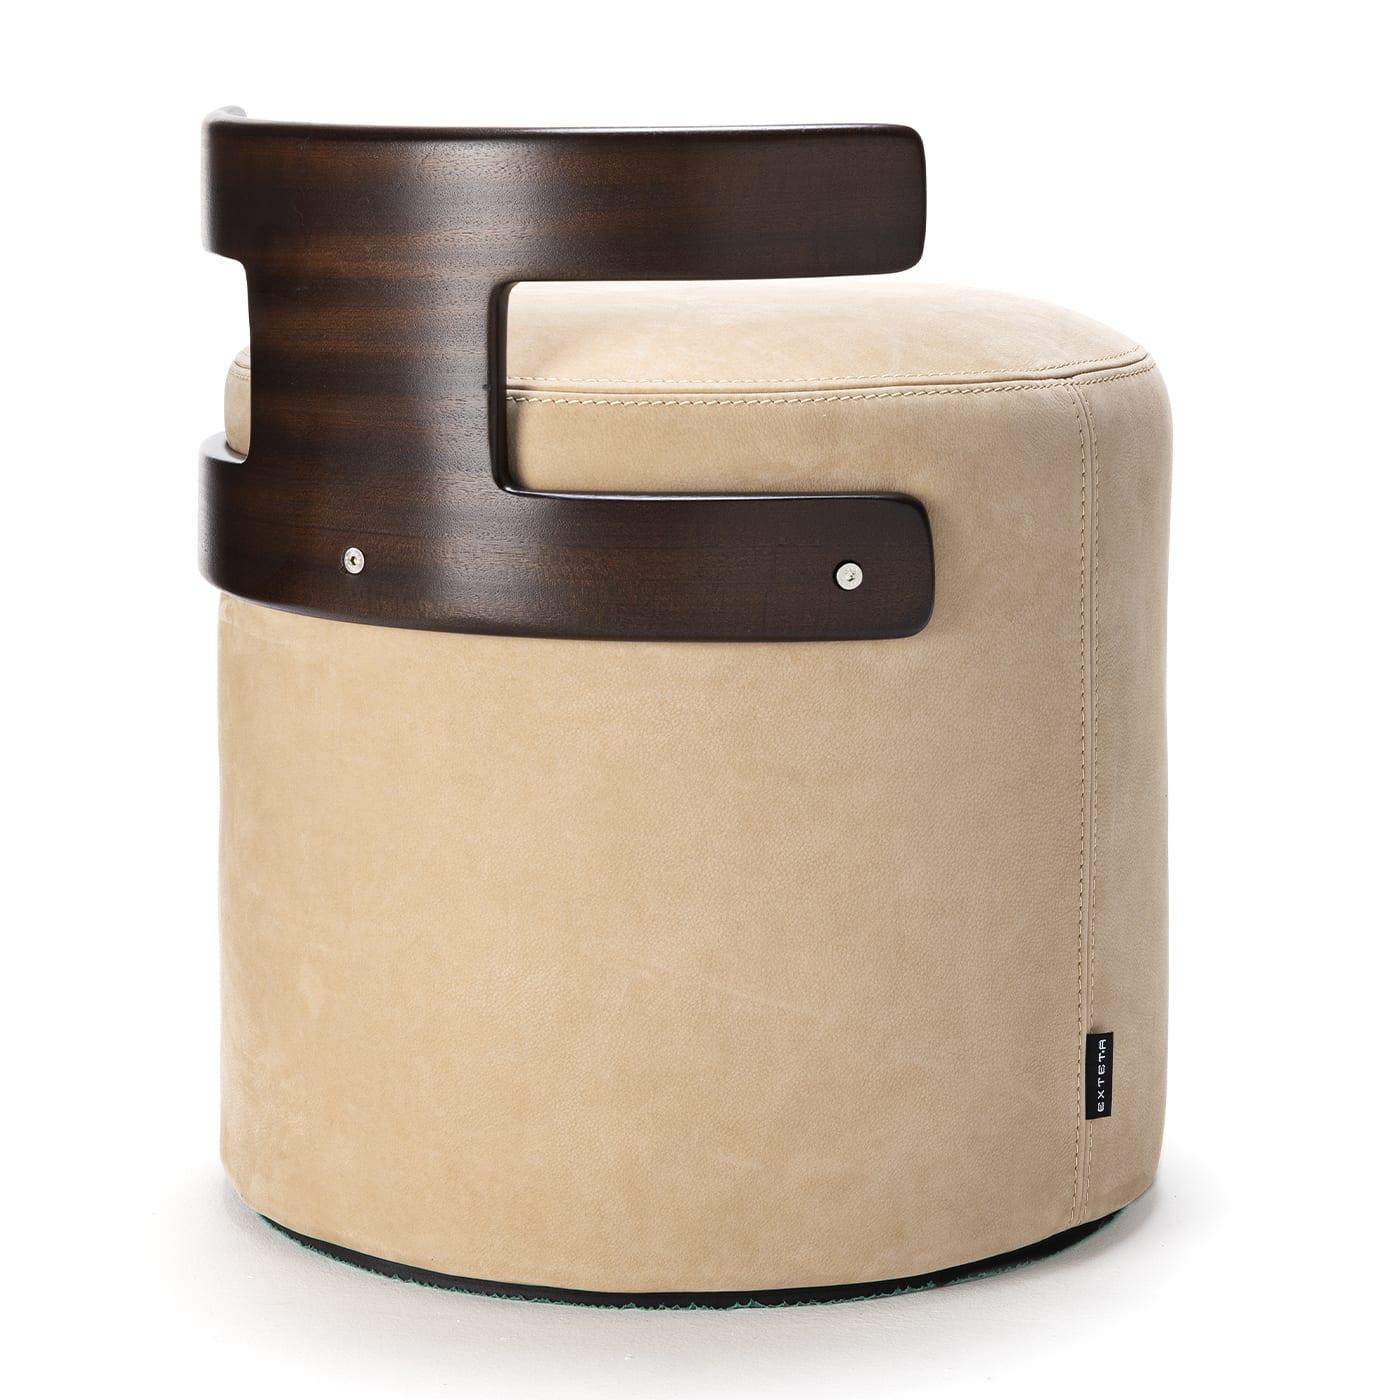 Ce pouf innovant de Massimo Castagna se compose d'une assise cylindrique doucement rembourrée, soutenue par un dossier en acajou aux lignes épurées et à la forme en T saisissante. Tapissée de cuir beige avec des surpiqûres ton sur ton, cette pièce